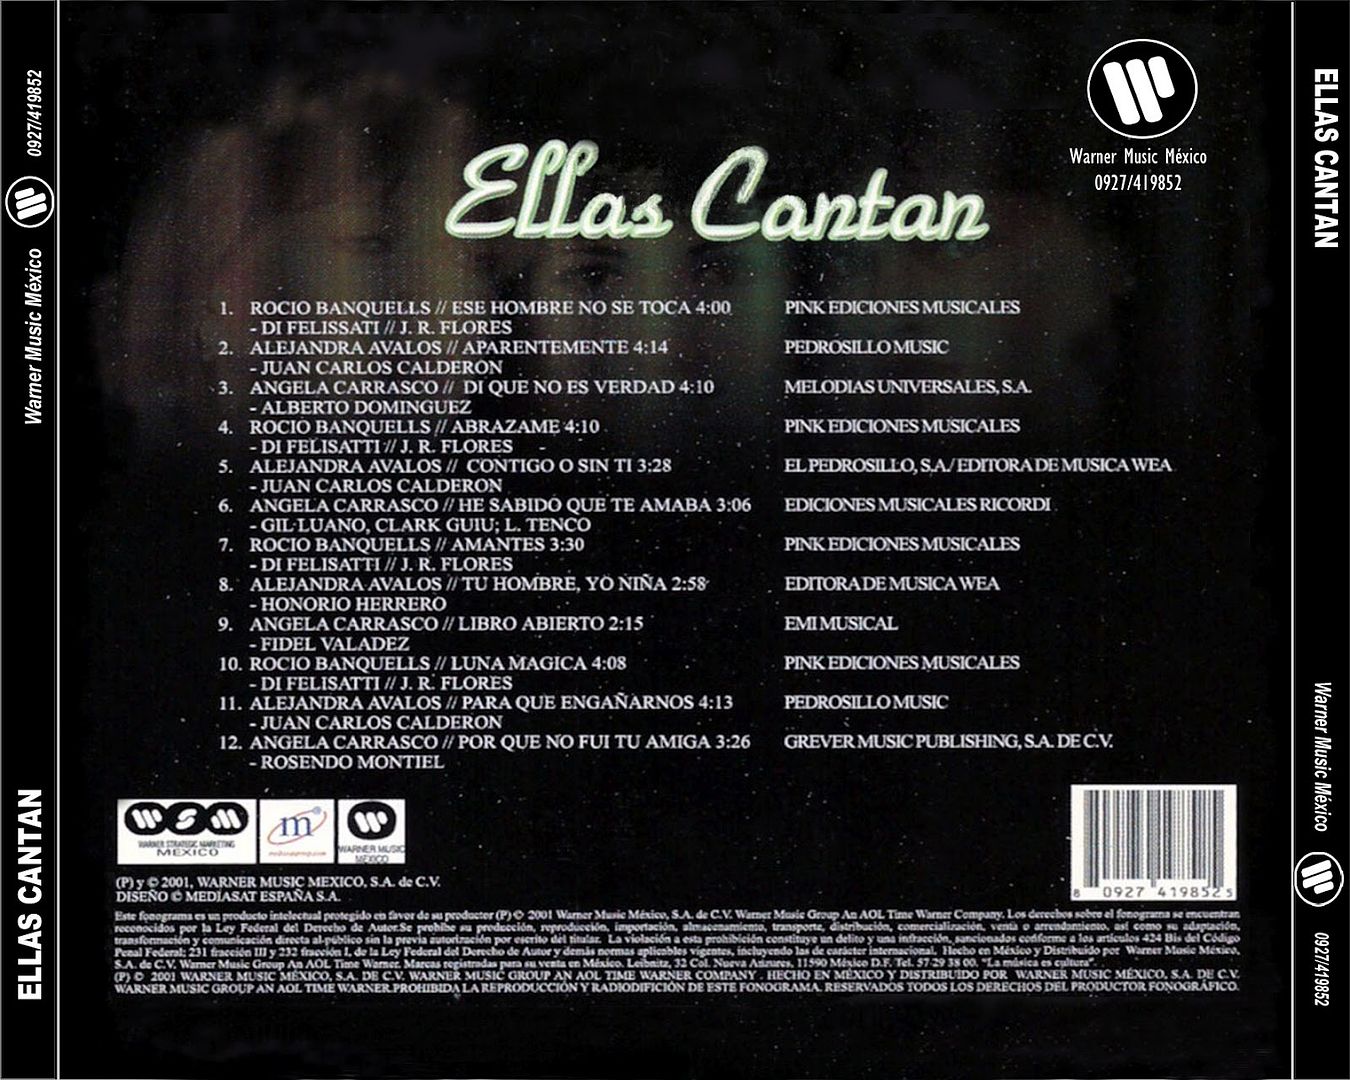 EllasCantan Back - Ellas Cantan (Rocio Banquells - Angela Carrasco - Alejandra Avalos)